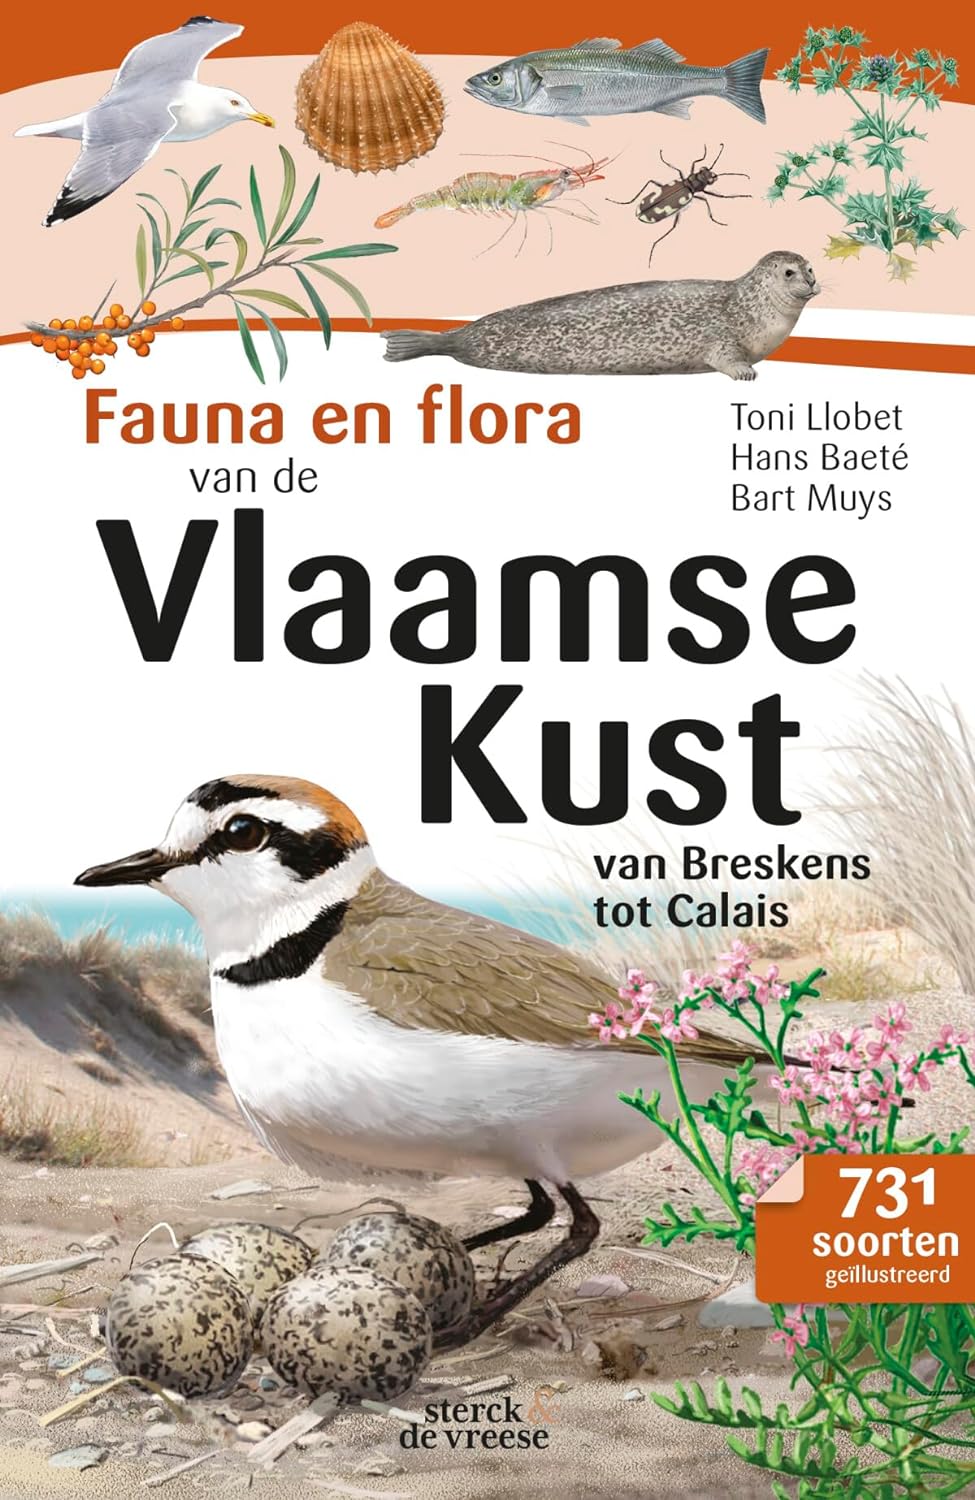 Online bestellen: Natuurgids Fauna en Flora van de Vlaamse kust | Sterck - de Vreese